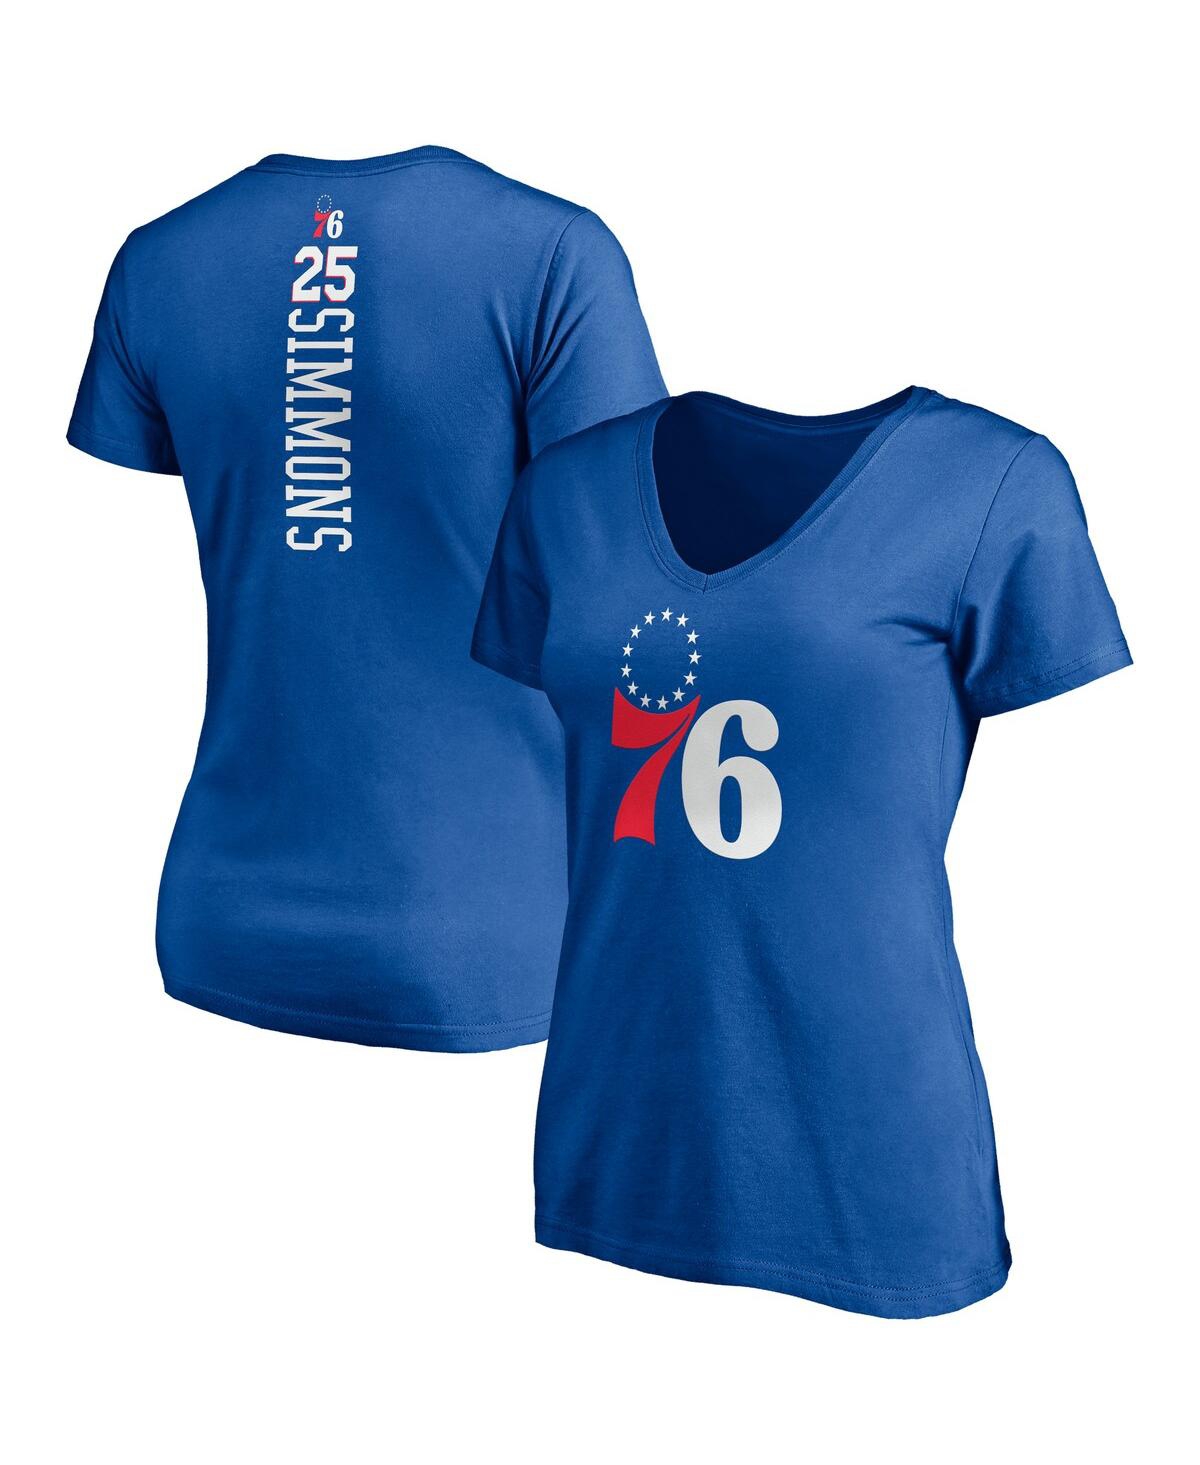 Women's Ben Simmons Royal Philadelphia 76Ers Playmaker Logo Name Number V-Neck T-Shirt - Royal